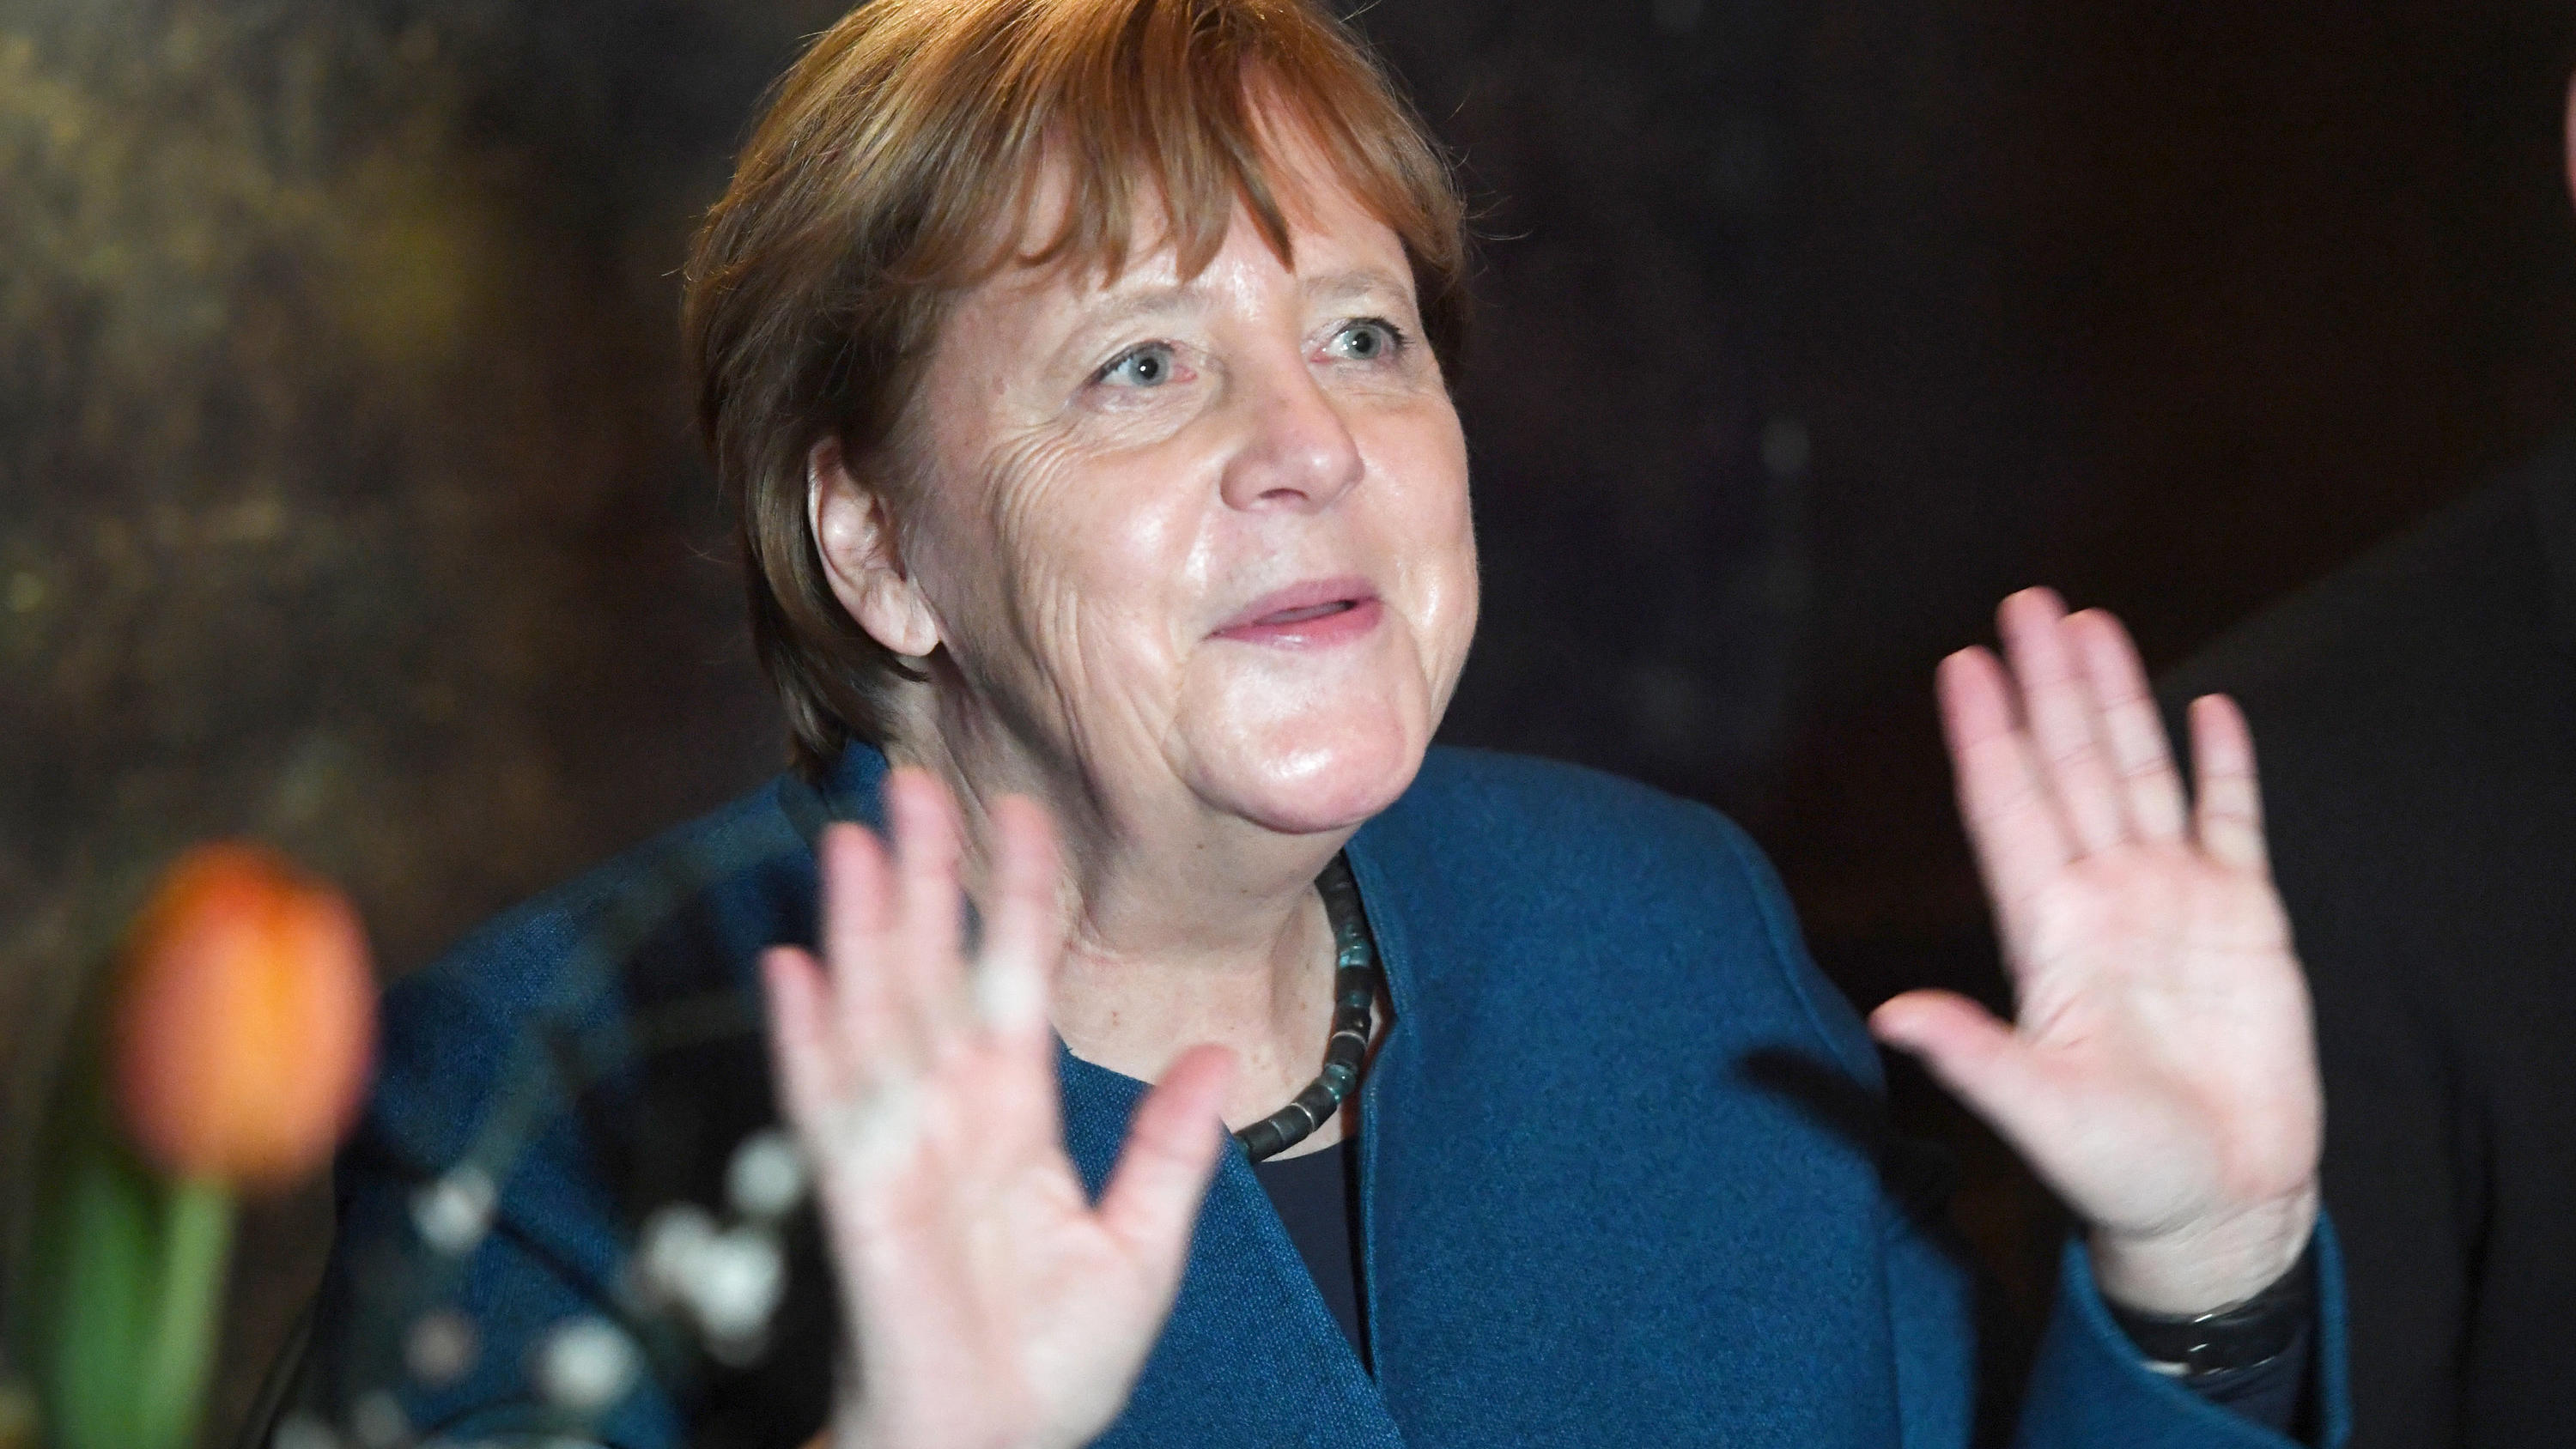 28.02.2020, Mecklenburg-Vorpommern, Stralsund: Bundeskanzlerin Angela Merkel (CDU) hebt auf dem Jahresempfang ihres Wahlkreises beide Hände hoch, um zu zeigen, dass sie niemandem die Hand geben möchte aufgrund einer möglichen Ansteckungsgefahr durch 